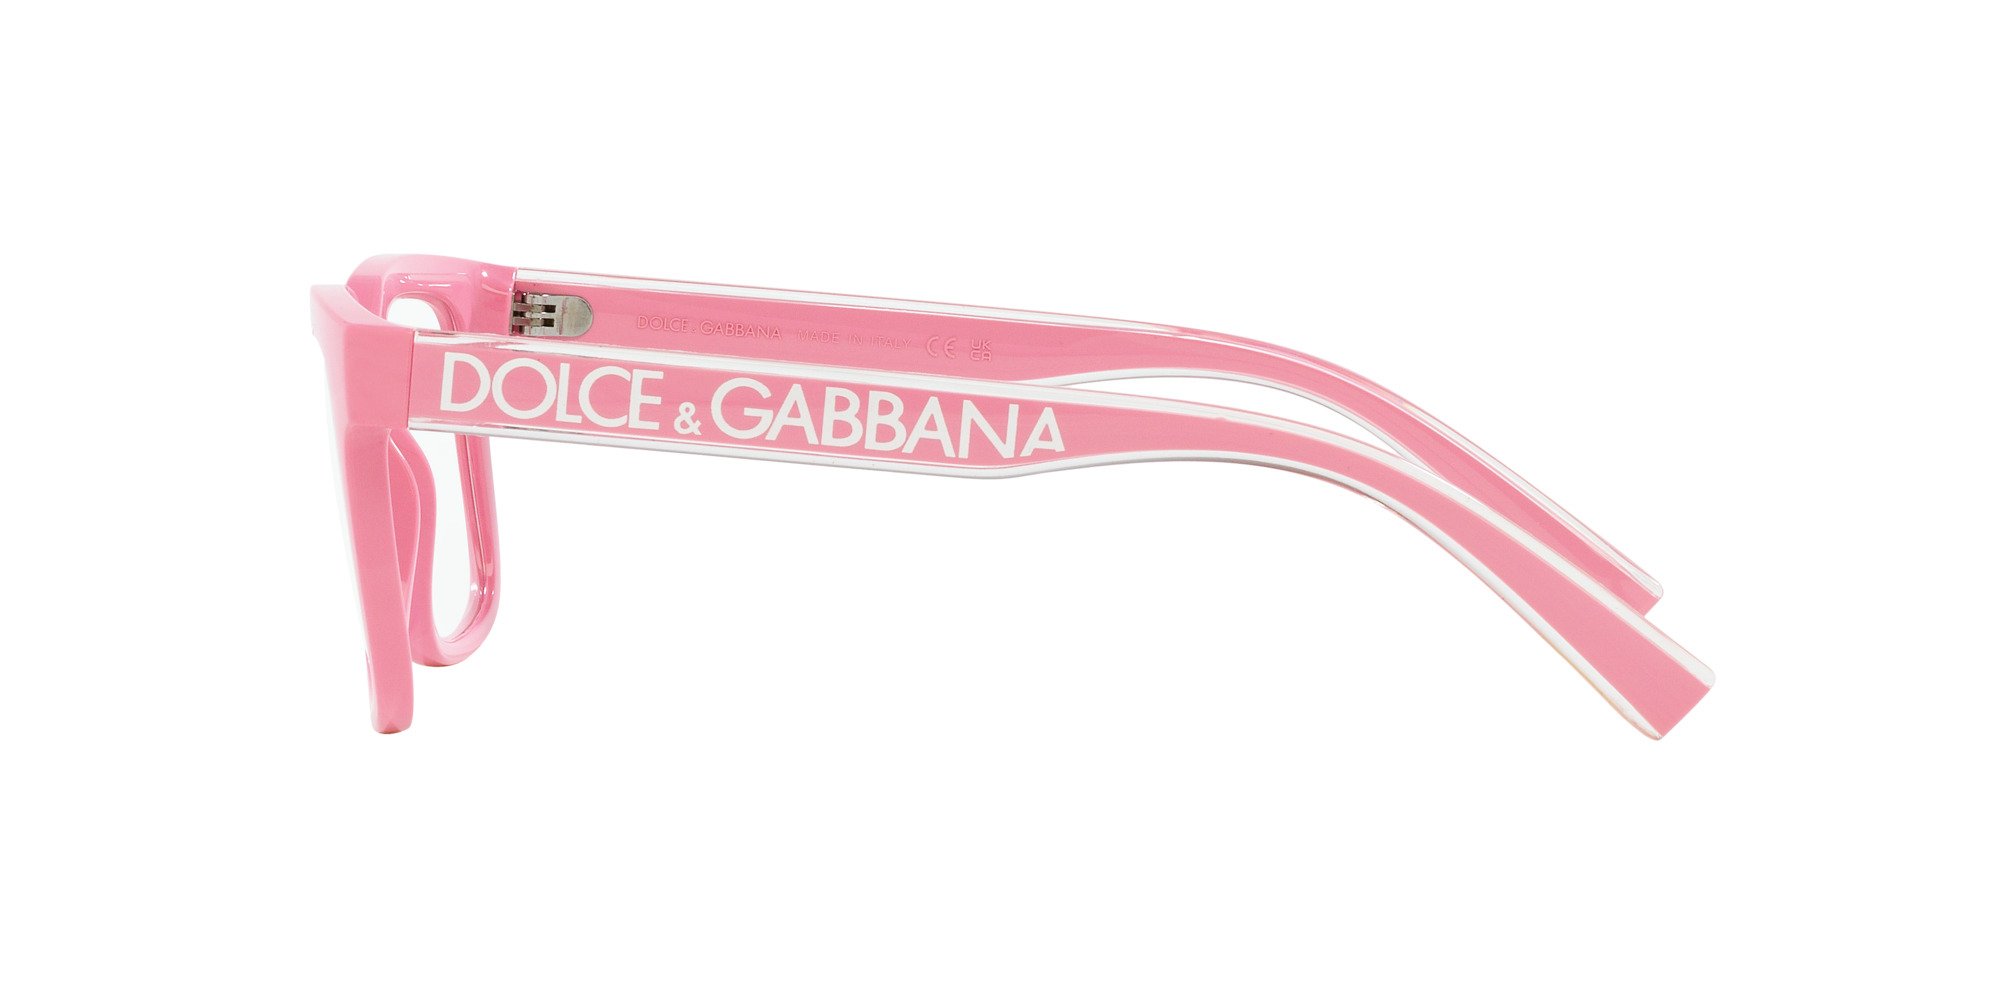 Das Bild zeigt die Korrektionsbrille DG5101 3262 von der Marke D&G in rosa.